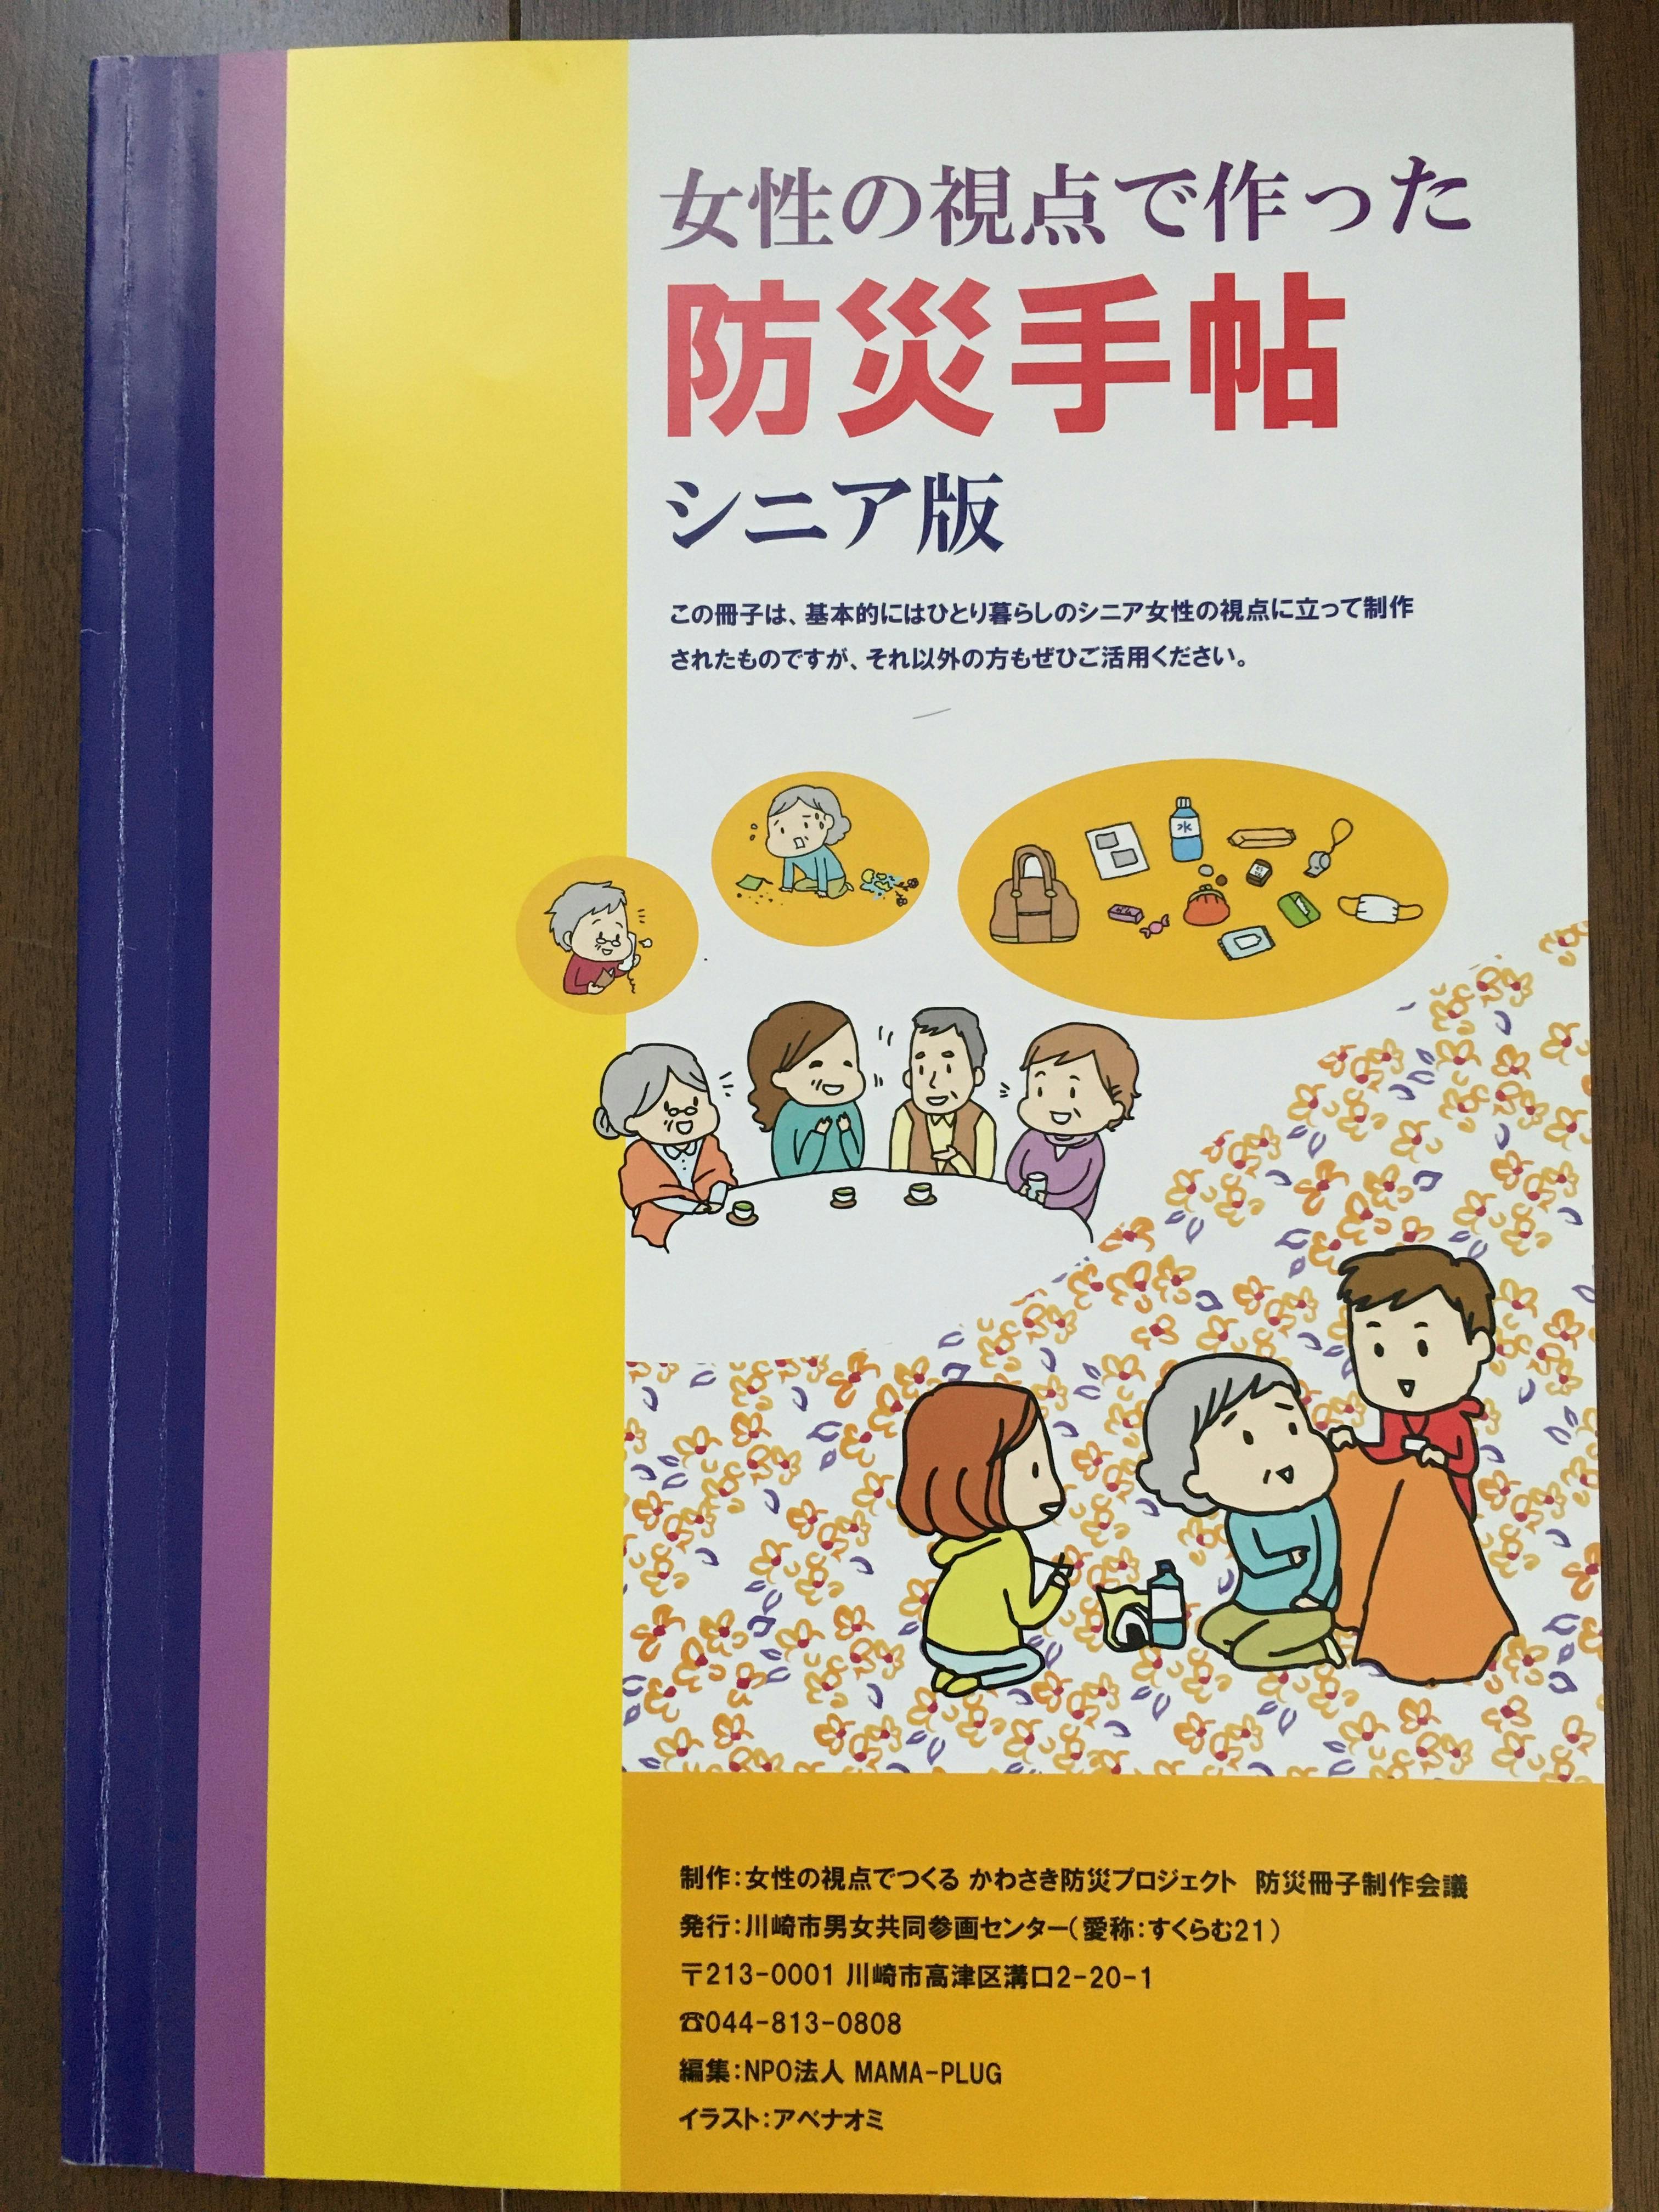 川崎市男女共同参画センター発行の女性の視点で作った防災手帳シニア版です。